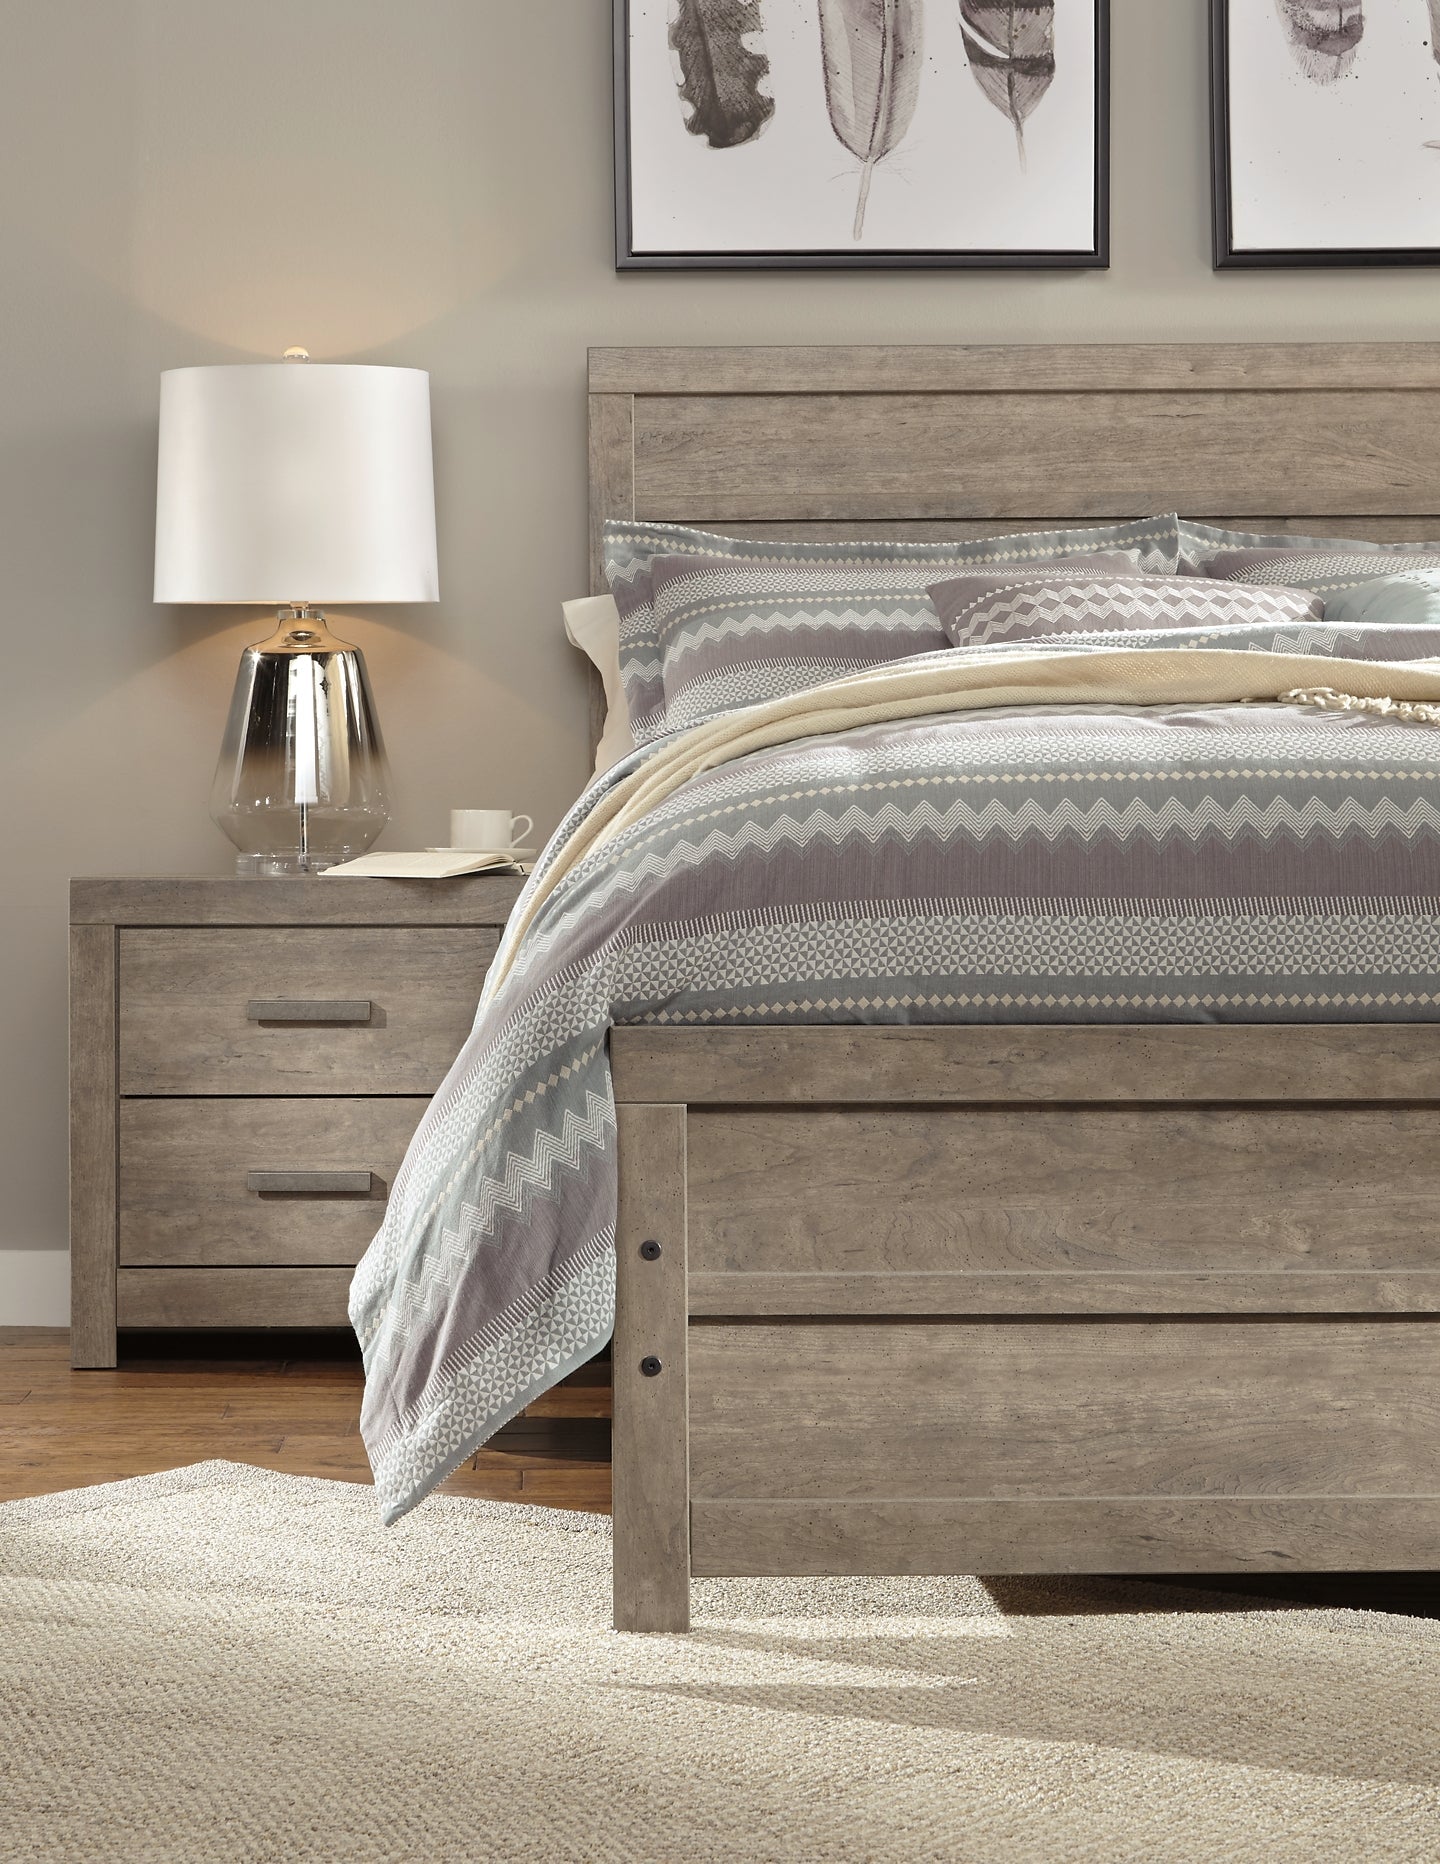 Ashley Express - Culverbach  Panel Bed at Towne & Country Furniture (AL) furniture, home furniture, home decor, sofa, bedding